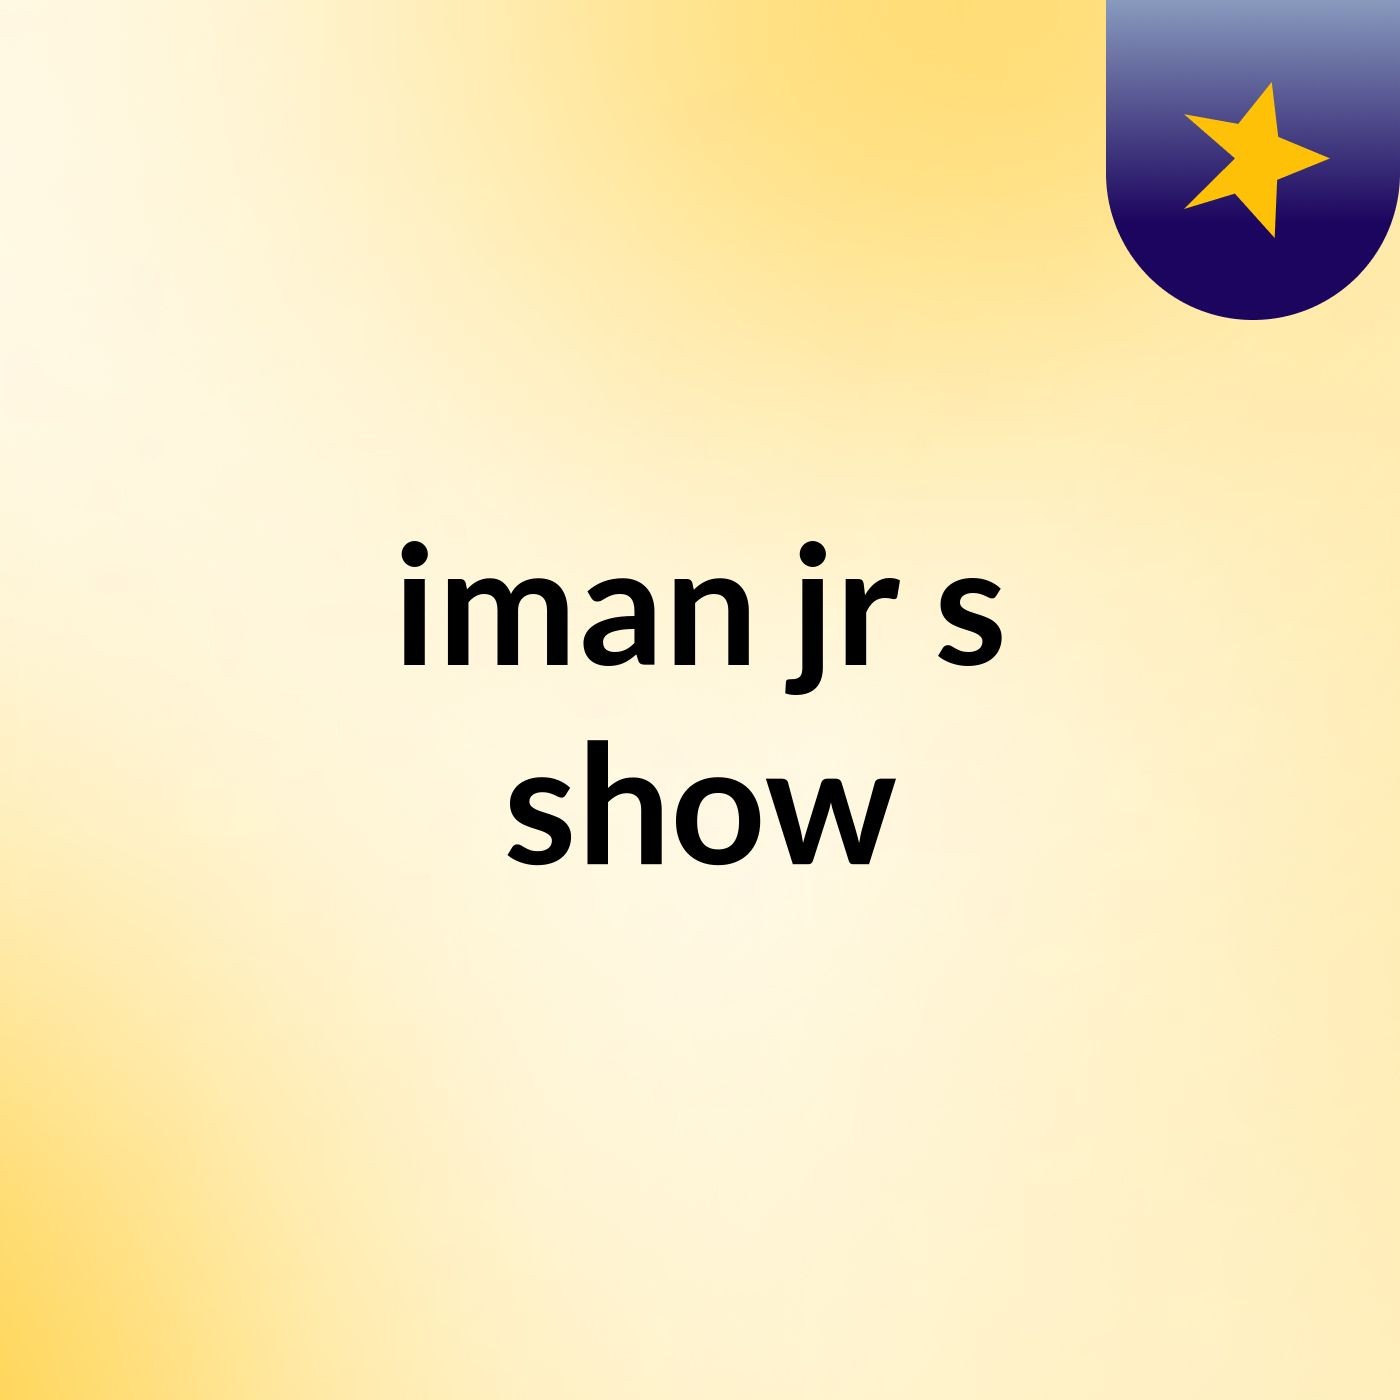 Episode 4 - iman jr's show